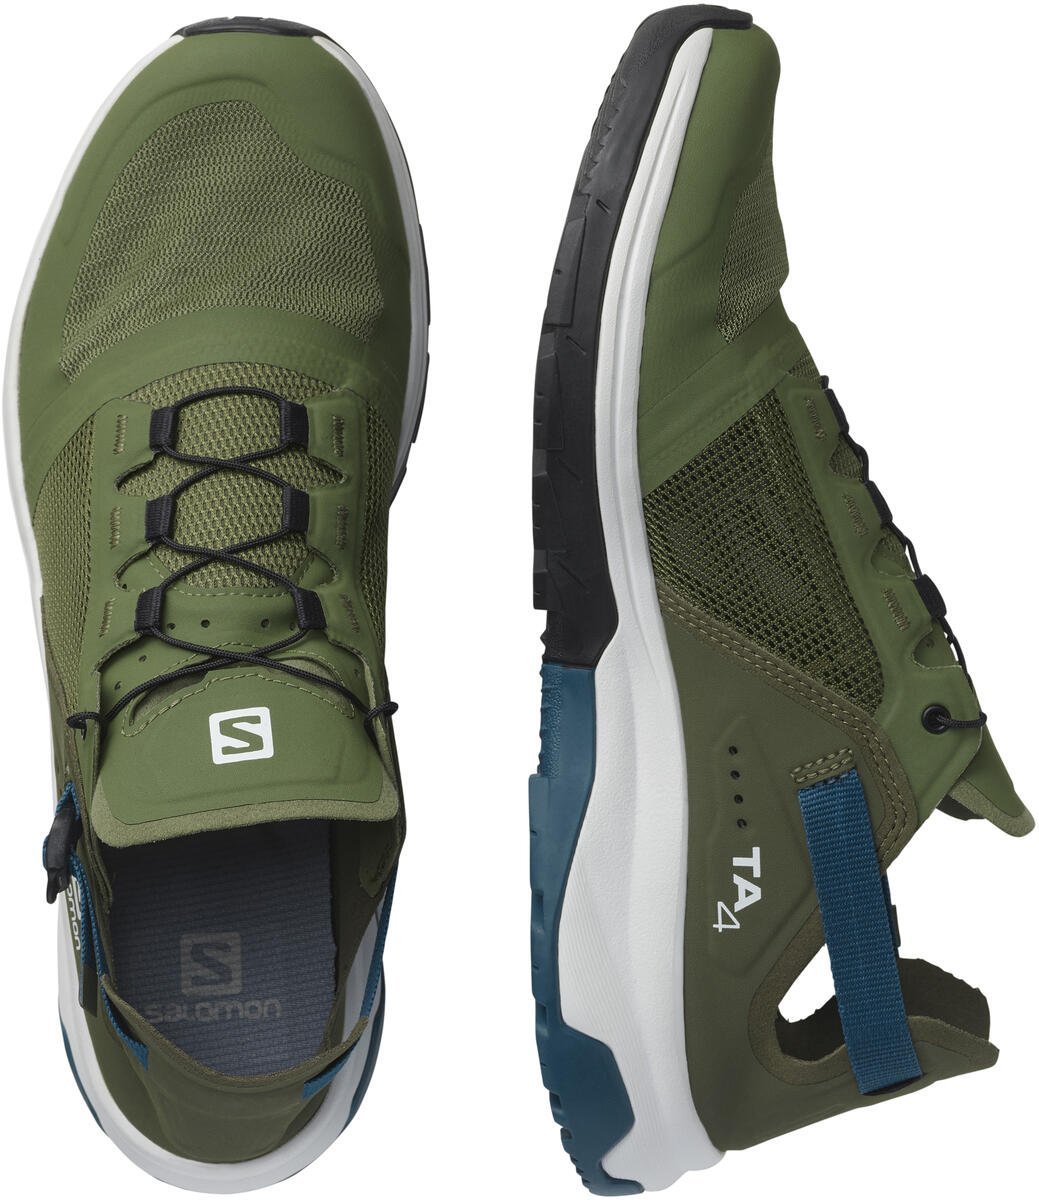 Topánky Salomon TECH AMPHIB 4 M - green